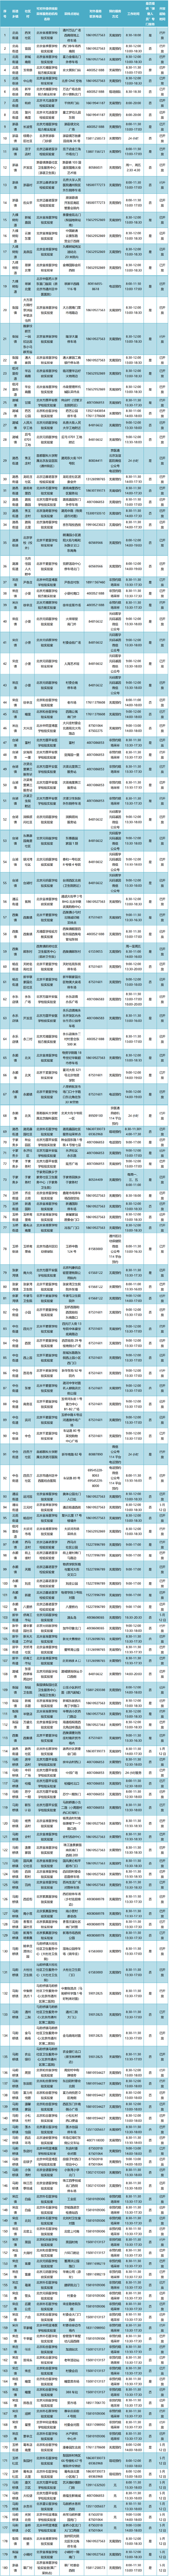 增至180个！北京通州免费常态化核酸检测点最新位置公布